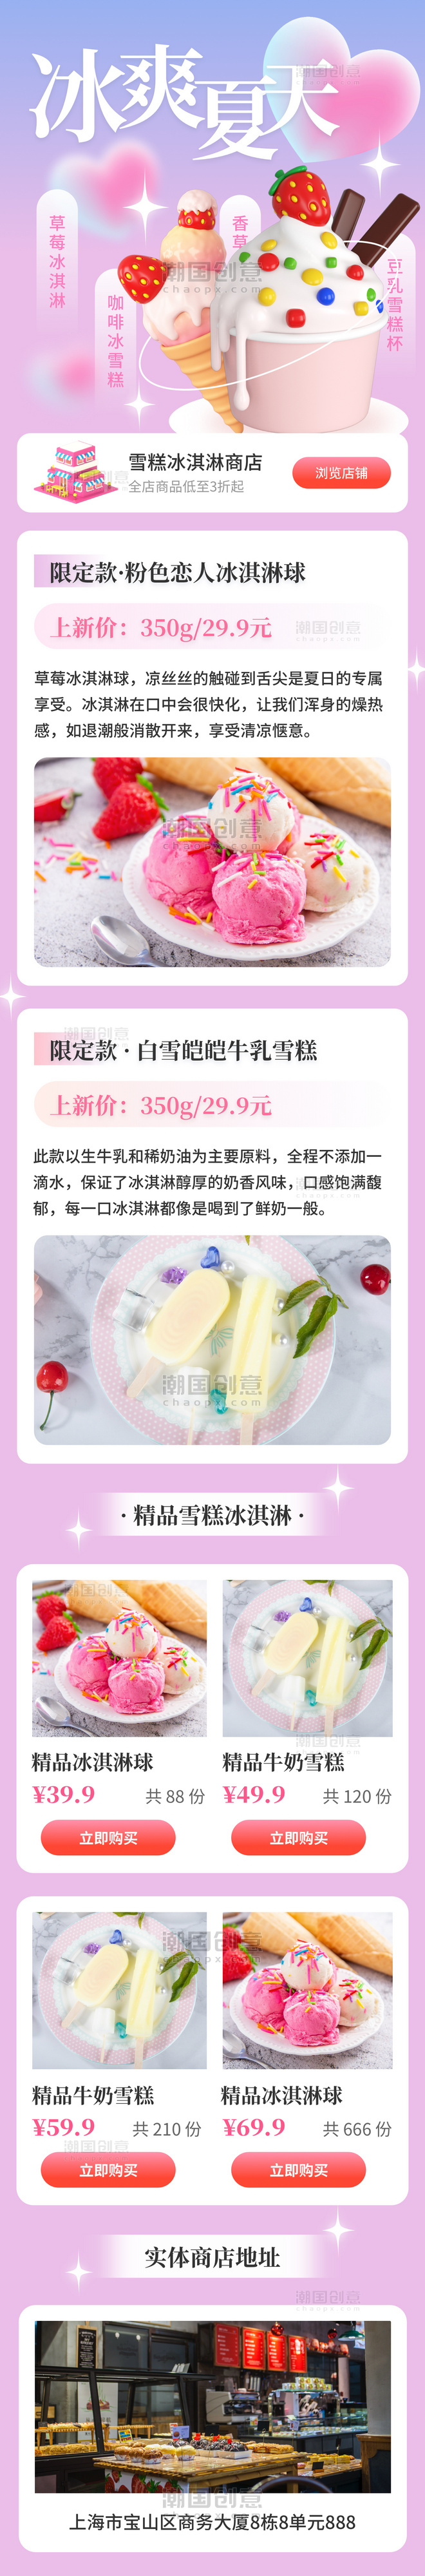 冰爽夏天限定雪糕冰淇淋电商营销活动长图h5